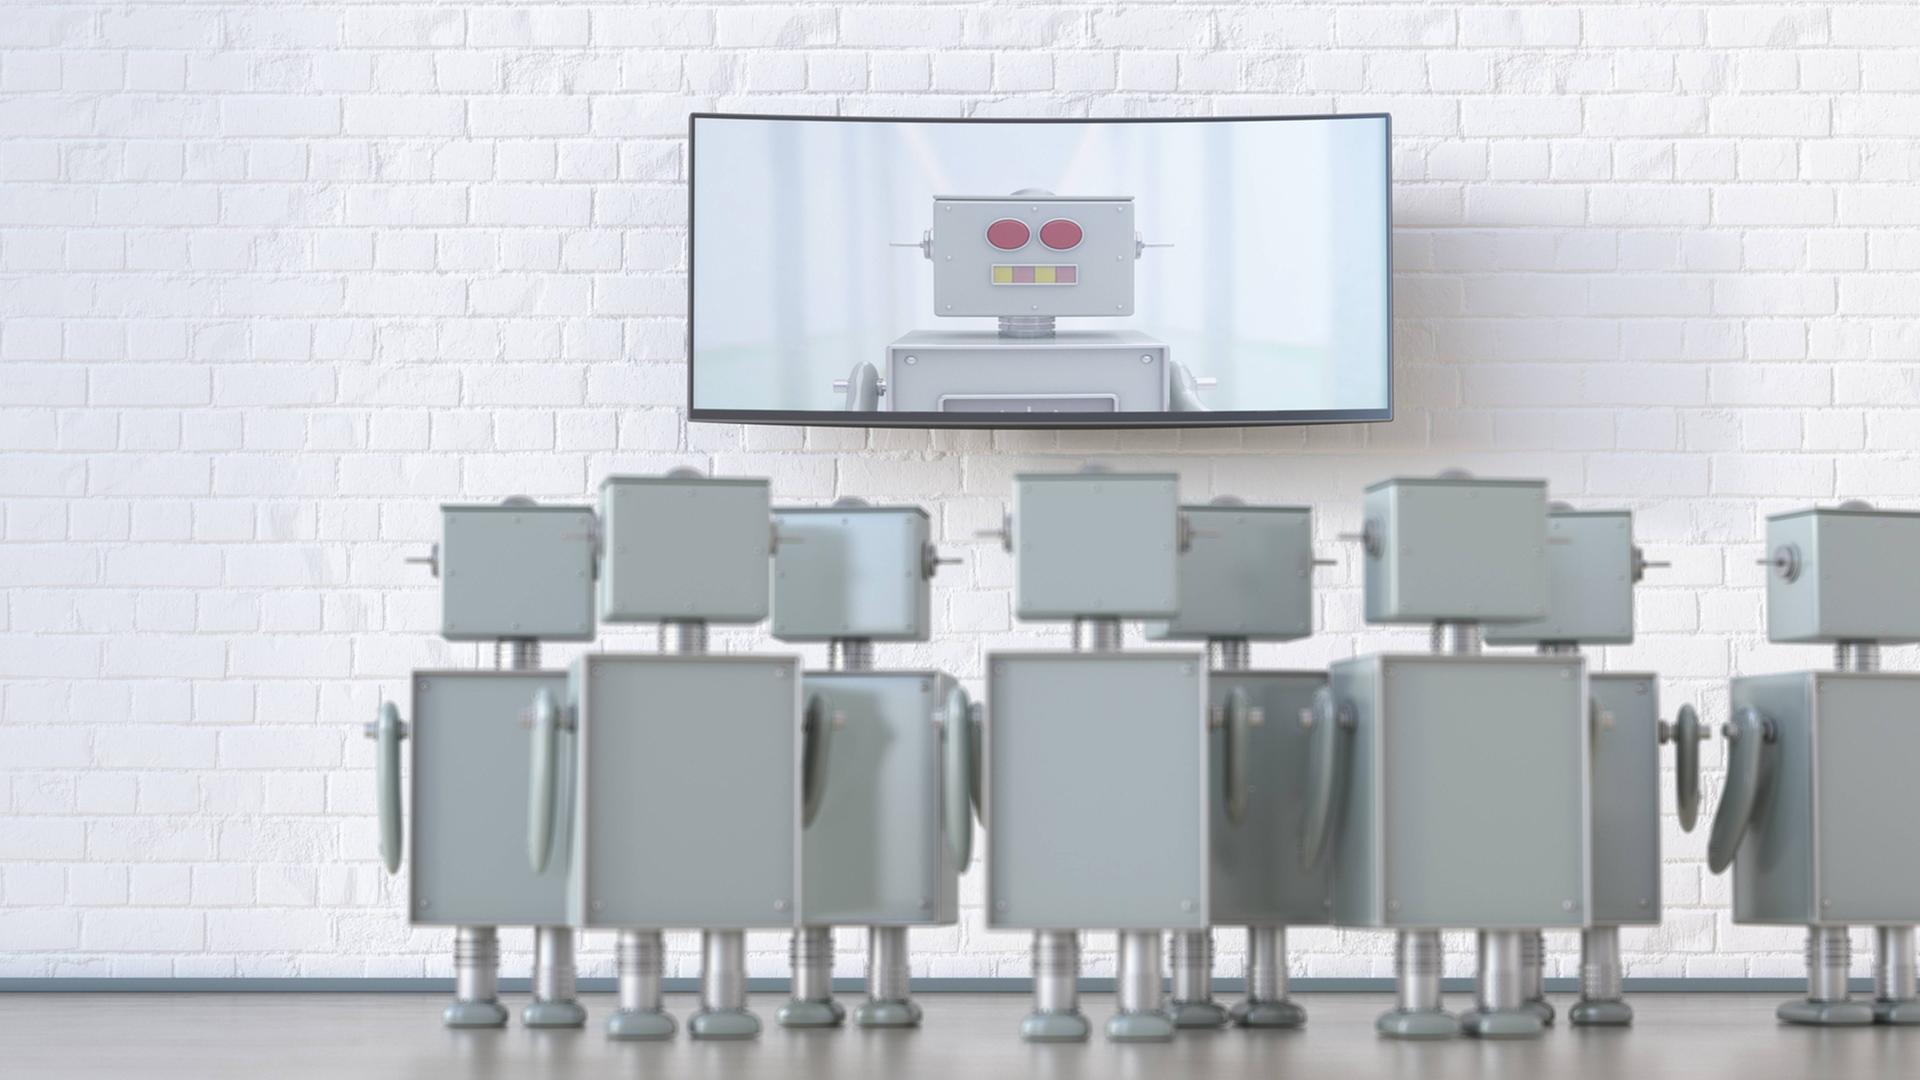 Eine Gruppe von Robotern blickt auf einen Bildschirm mit einem Roboter